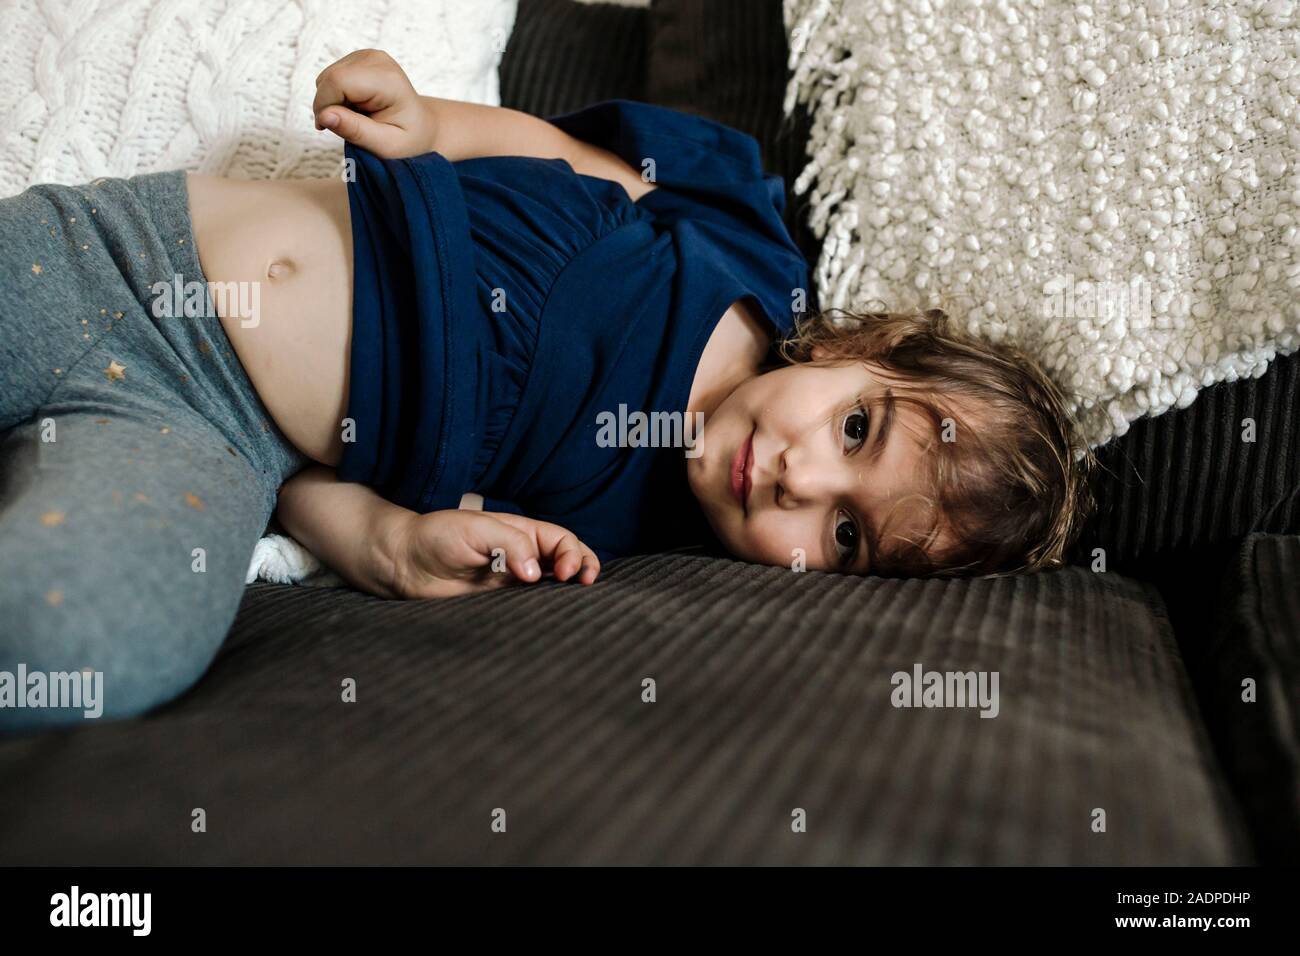 Niña de 2 años de edad mostrando el vientre Fotografía de stock